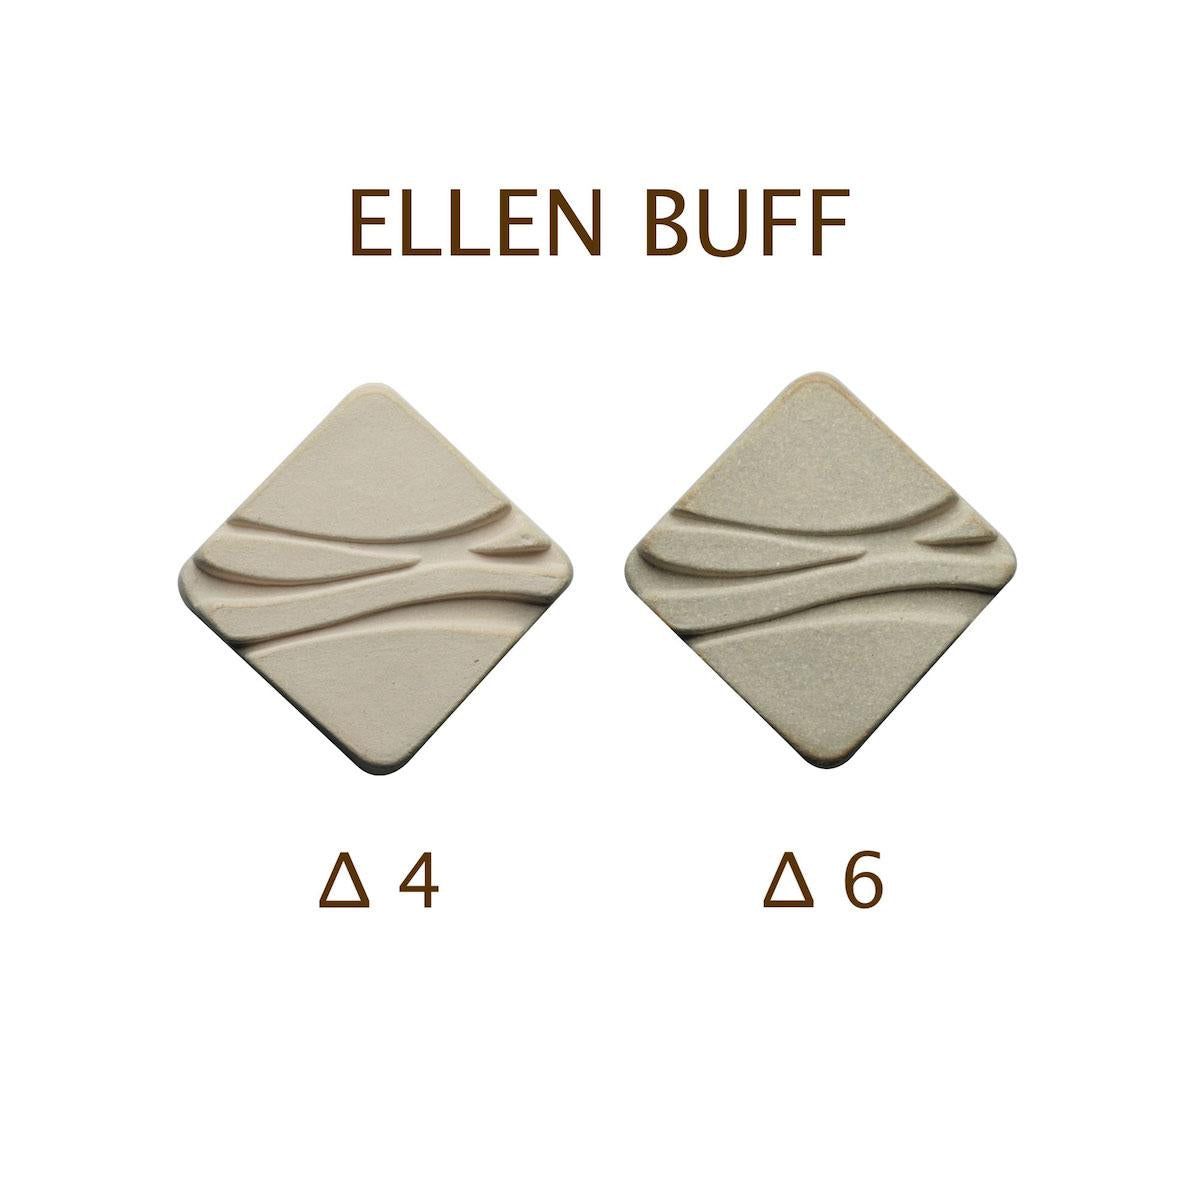 Ellen Buff Cone 4-6